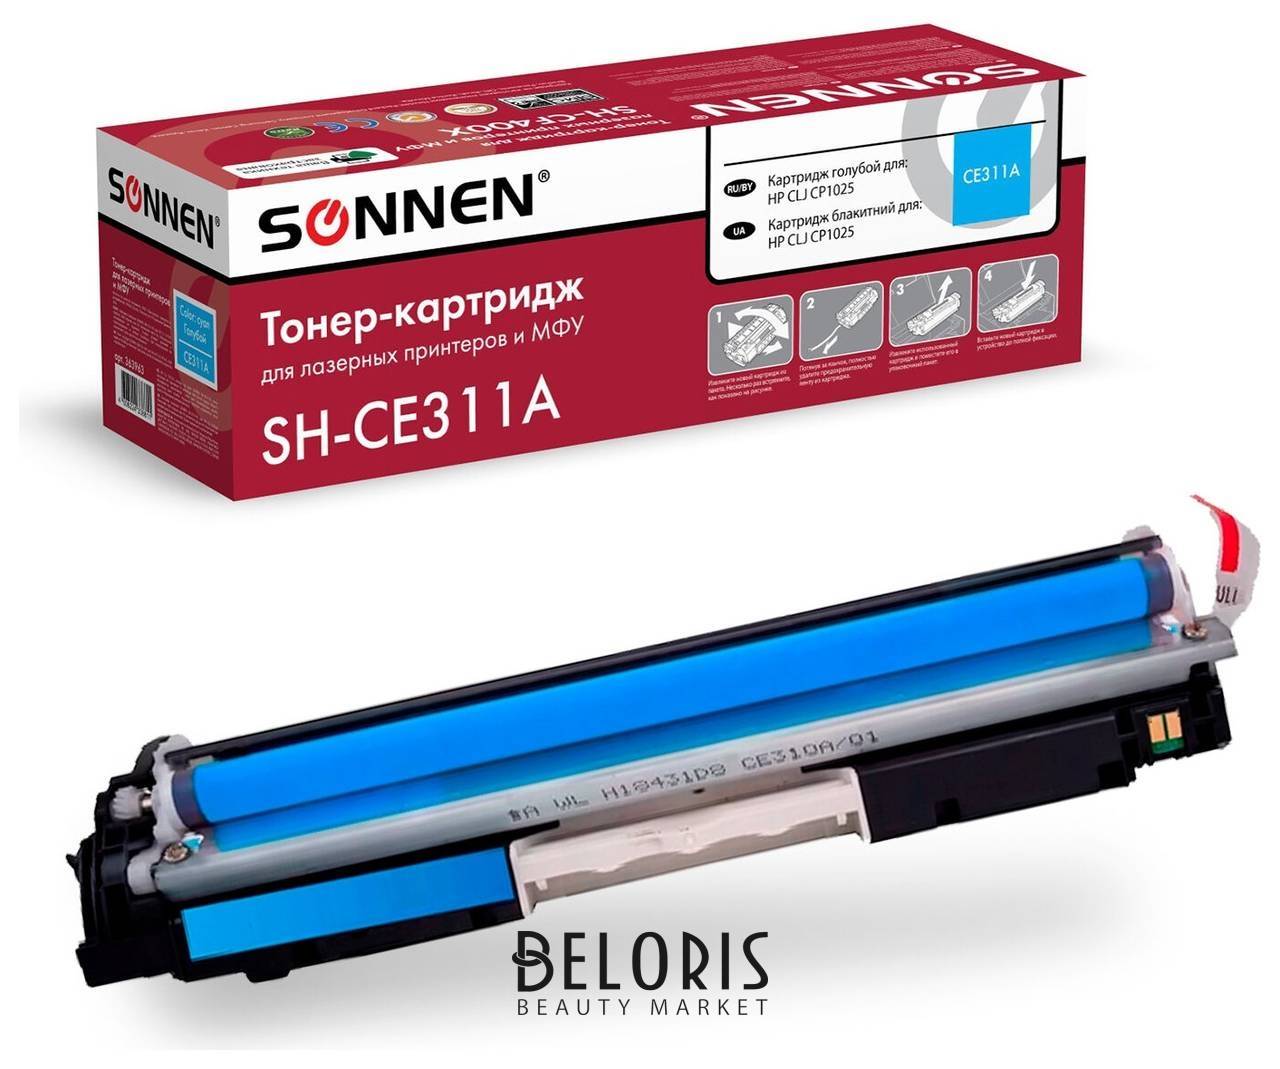 Картридж лазерный Sonnen (Sh-ce311a) для HP CLJ Cp1025 высшее качество, голубой, 1000 страниц, 363963 Sonnen